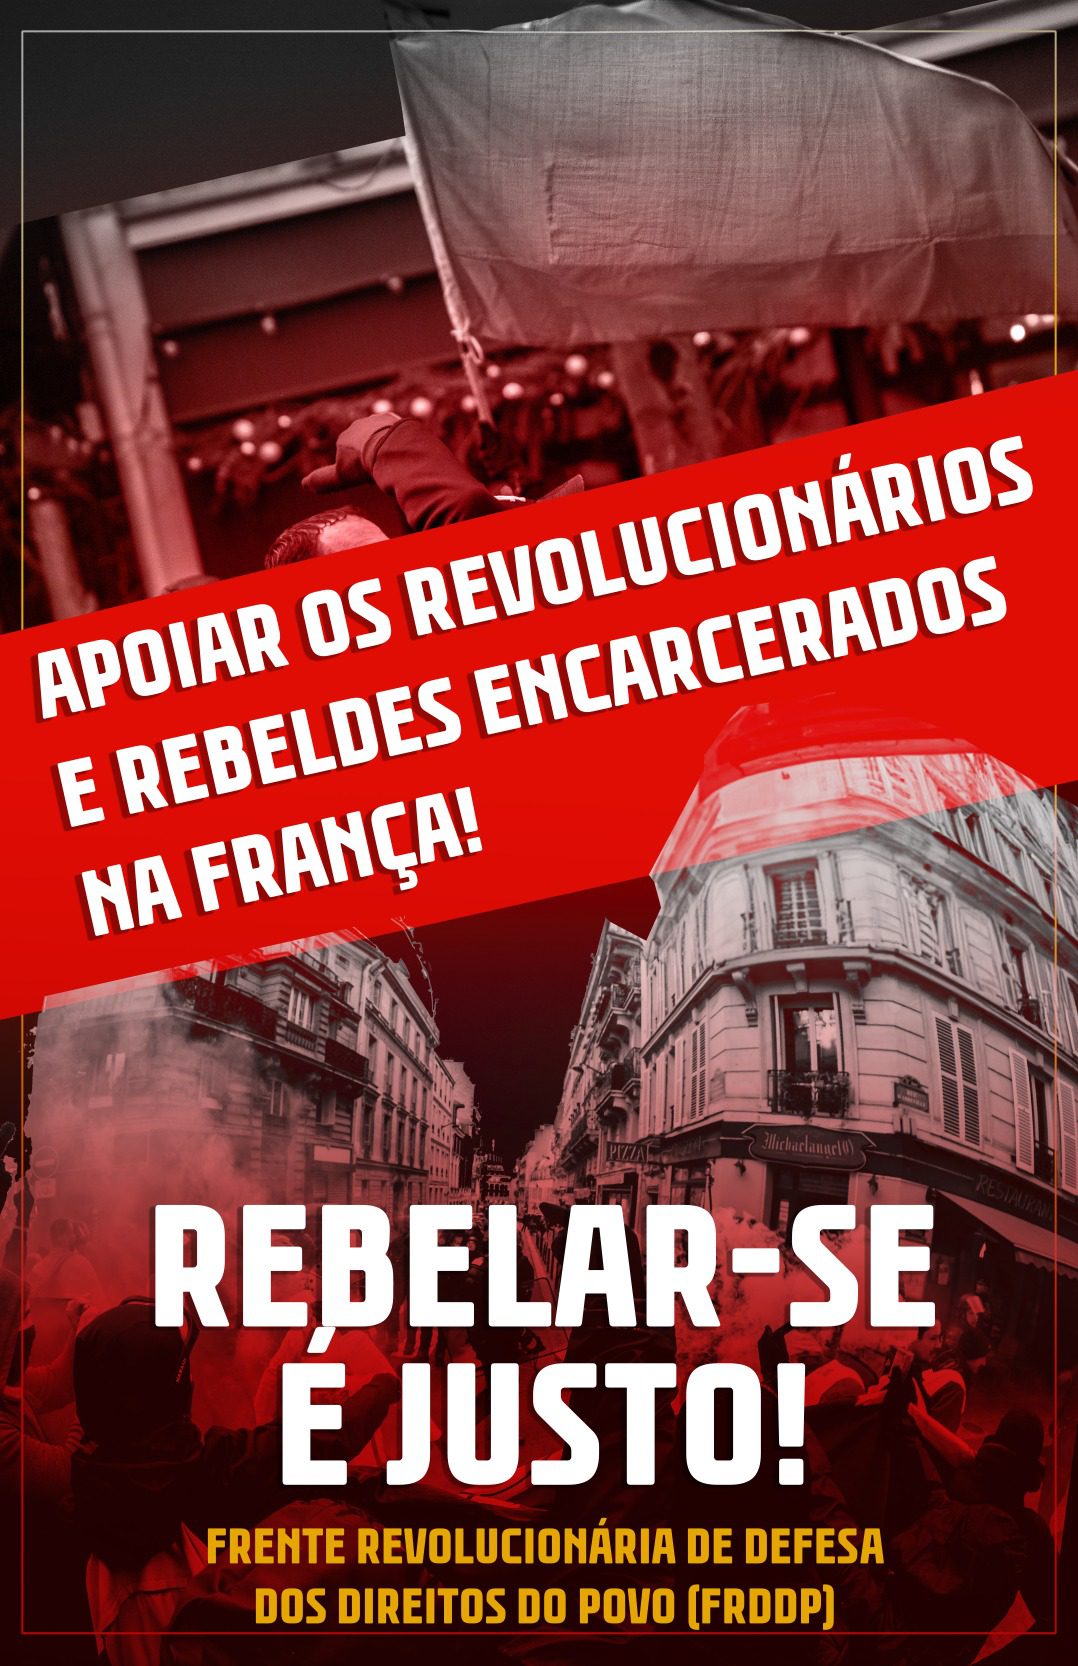 Blog RebeldeS